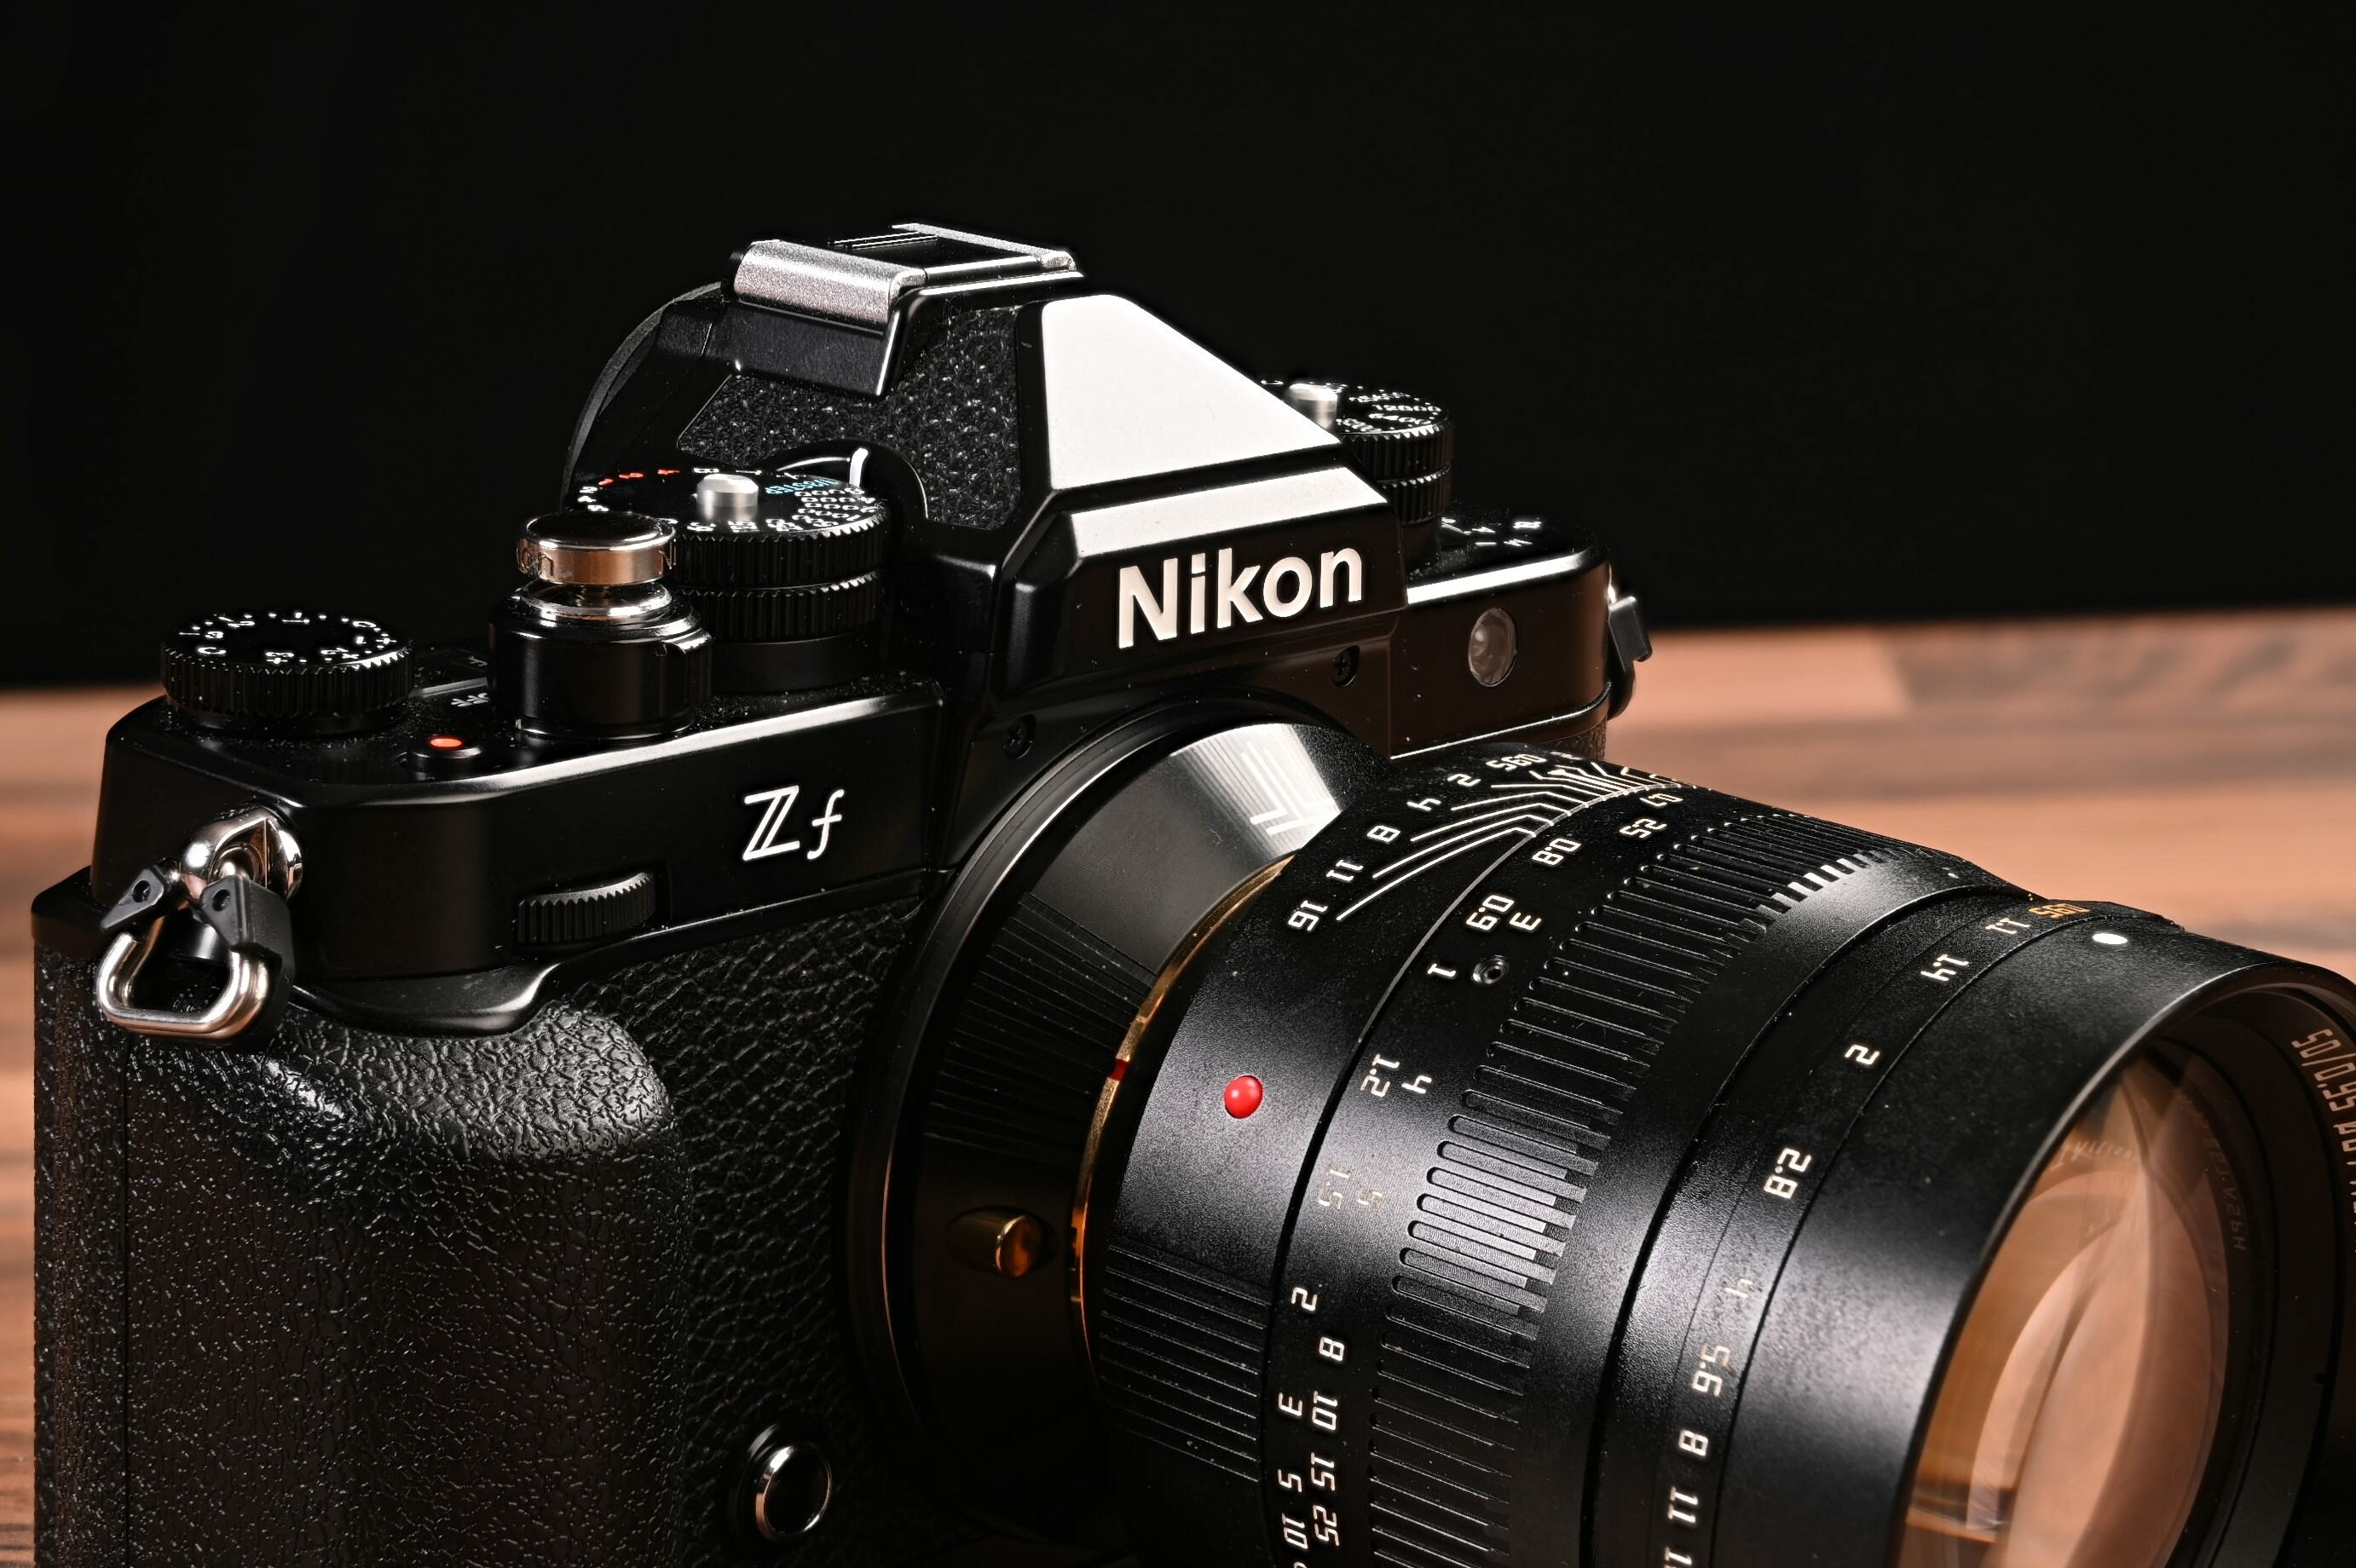 Maggiori informazioni su "Nikon Zf : noblesse oblige"